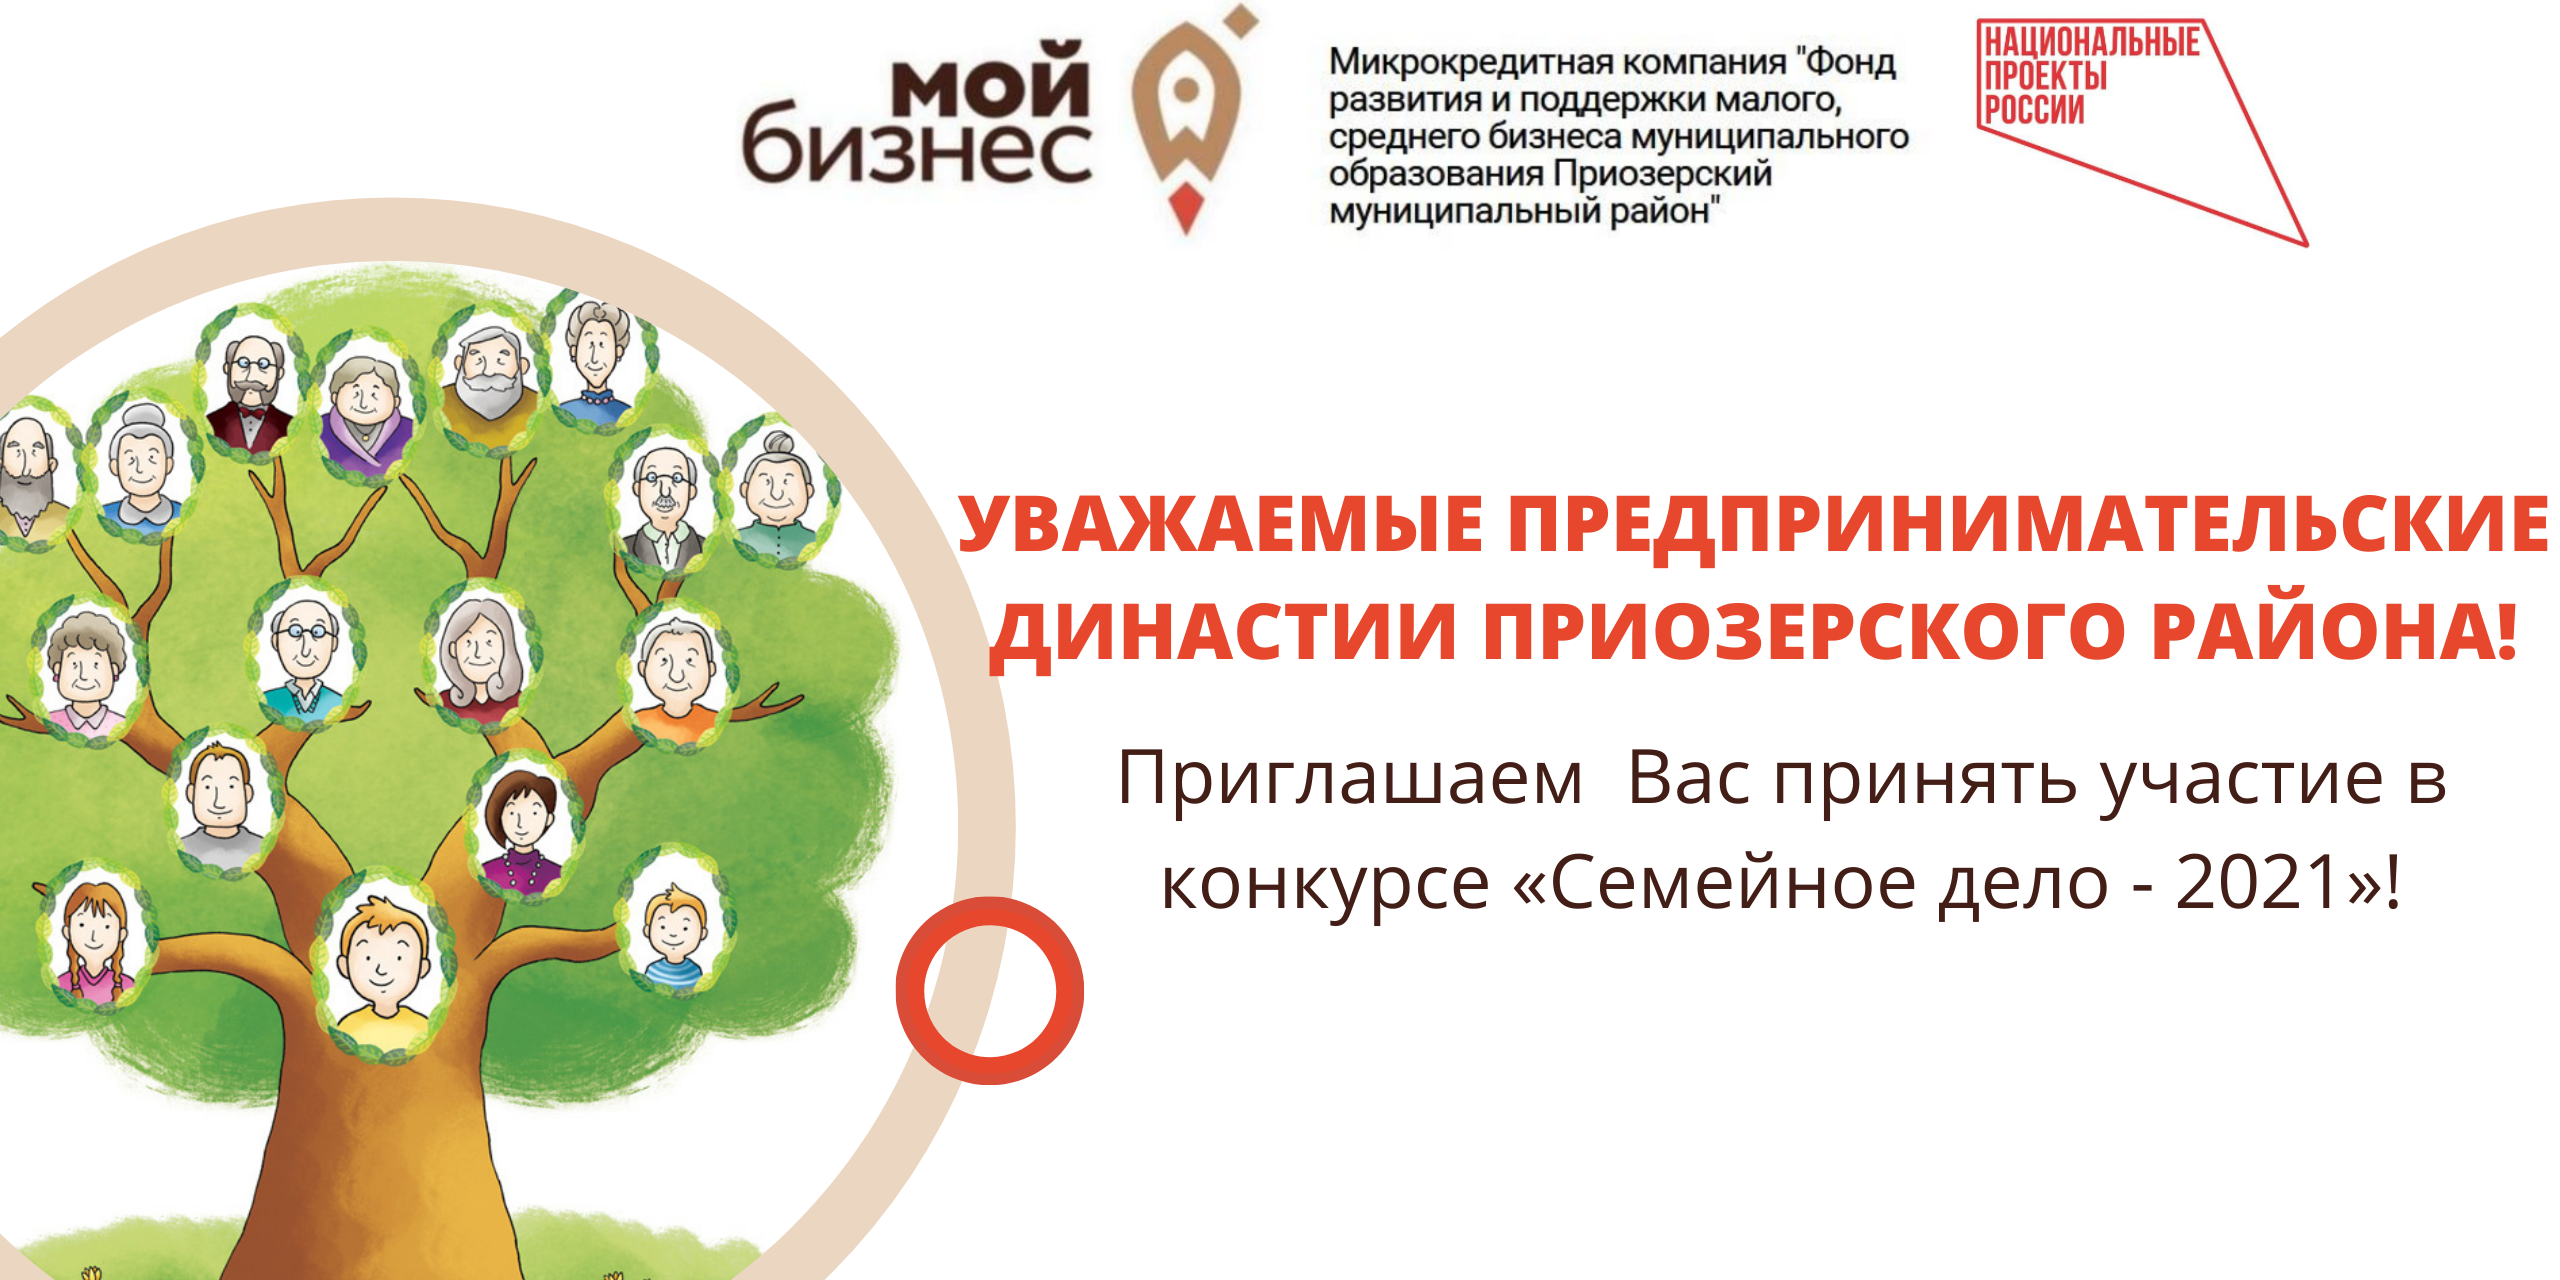 Приглашаем предпринимательские династии Приозерского района принять участие в конкурсе «Семейное дело - 2021»!